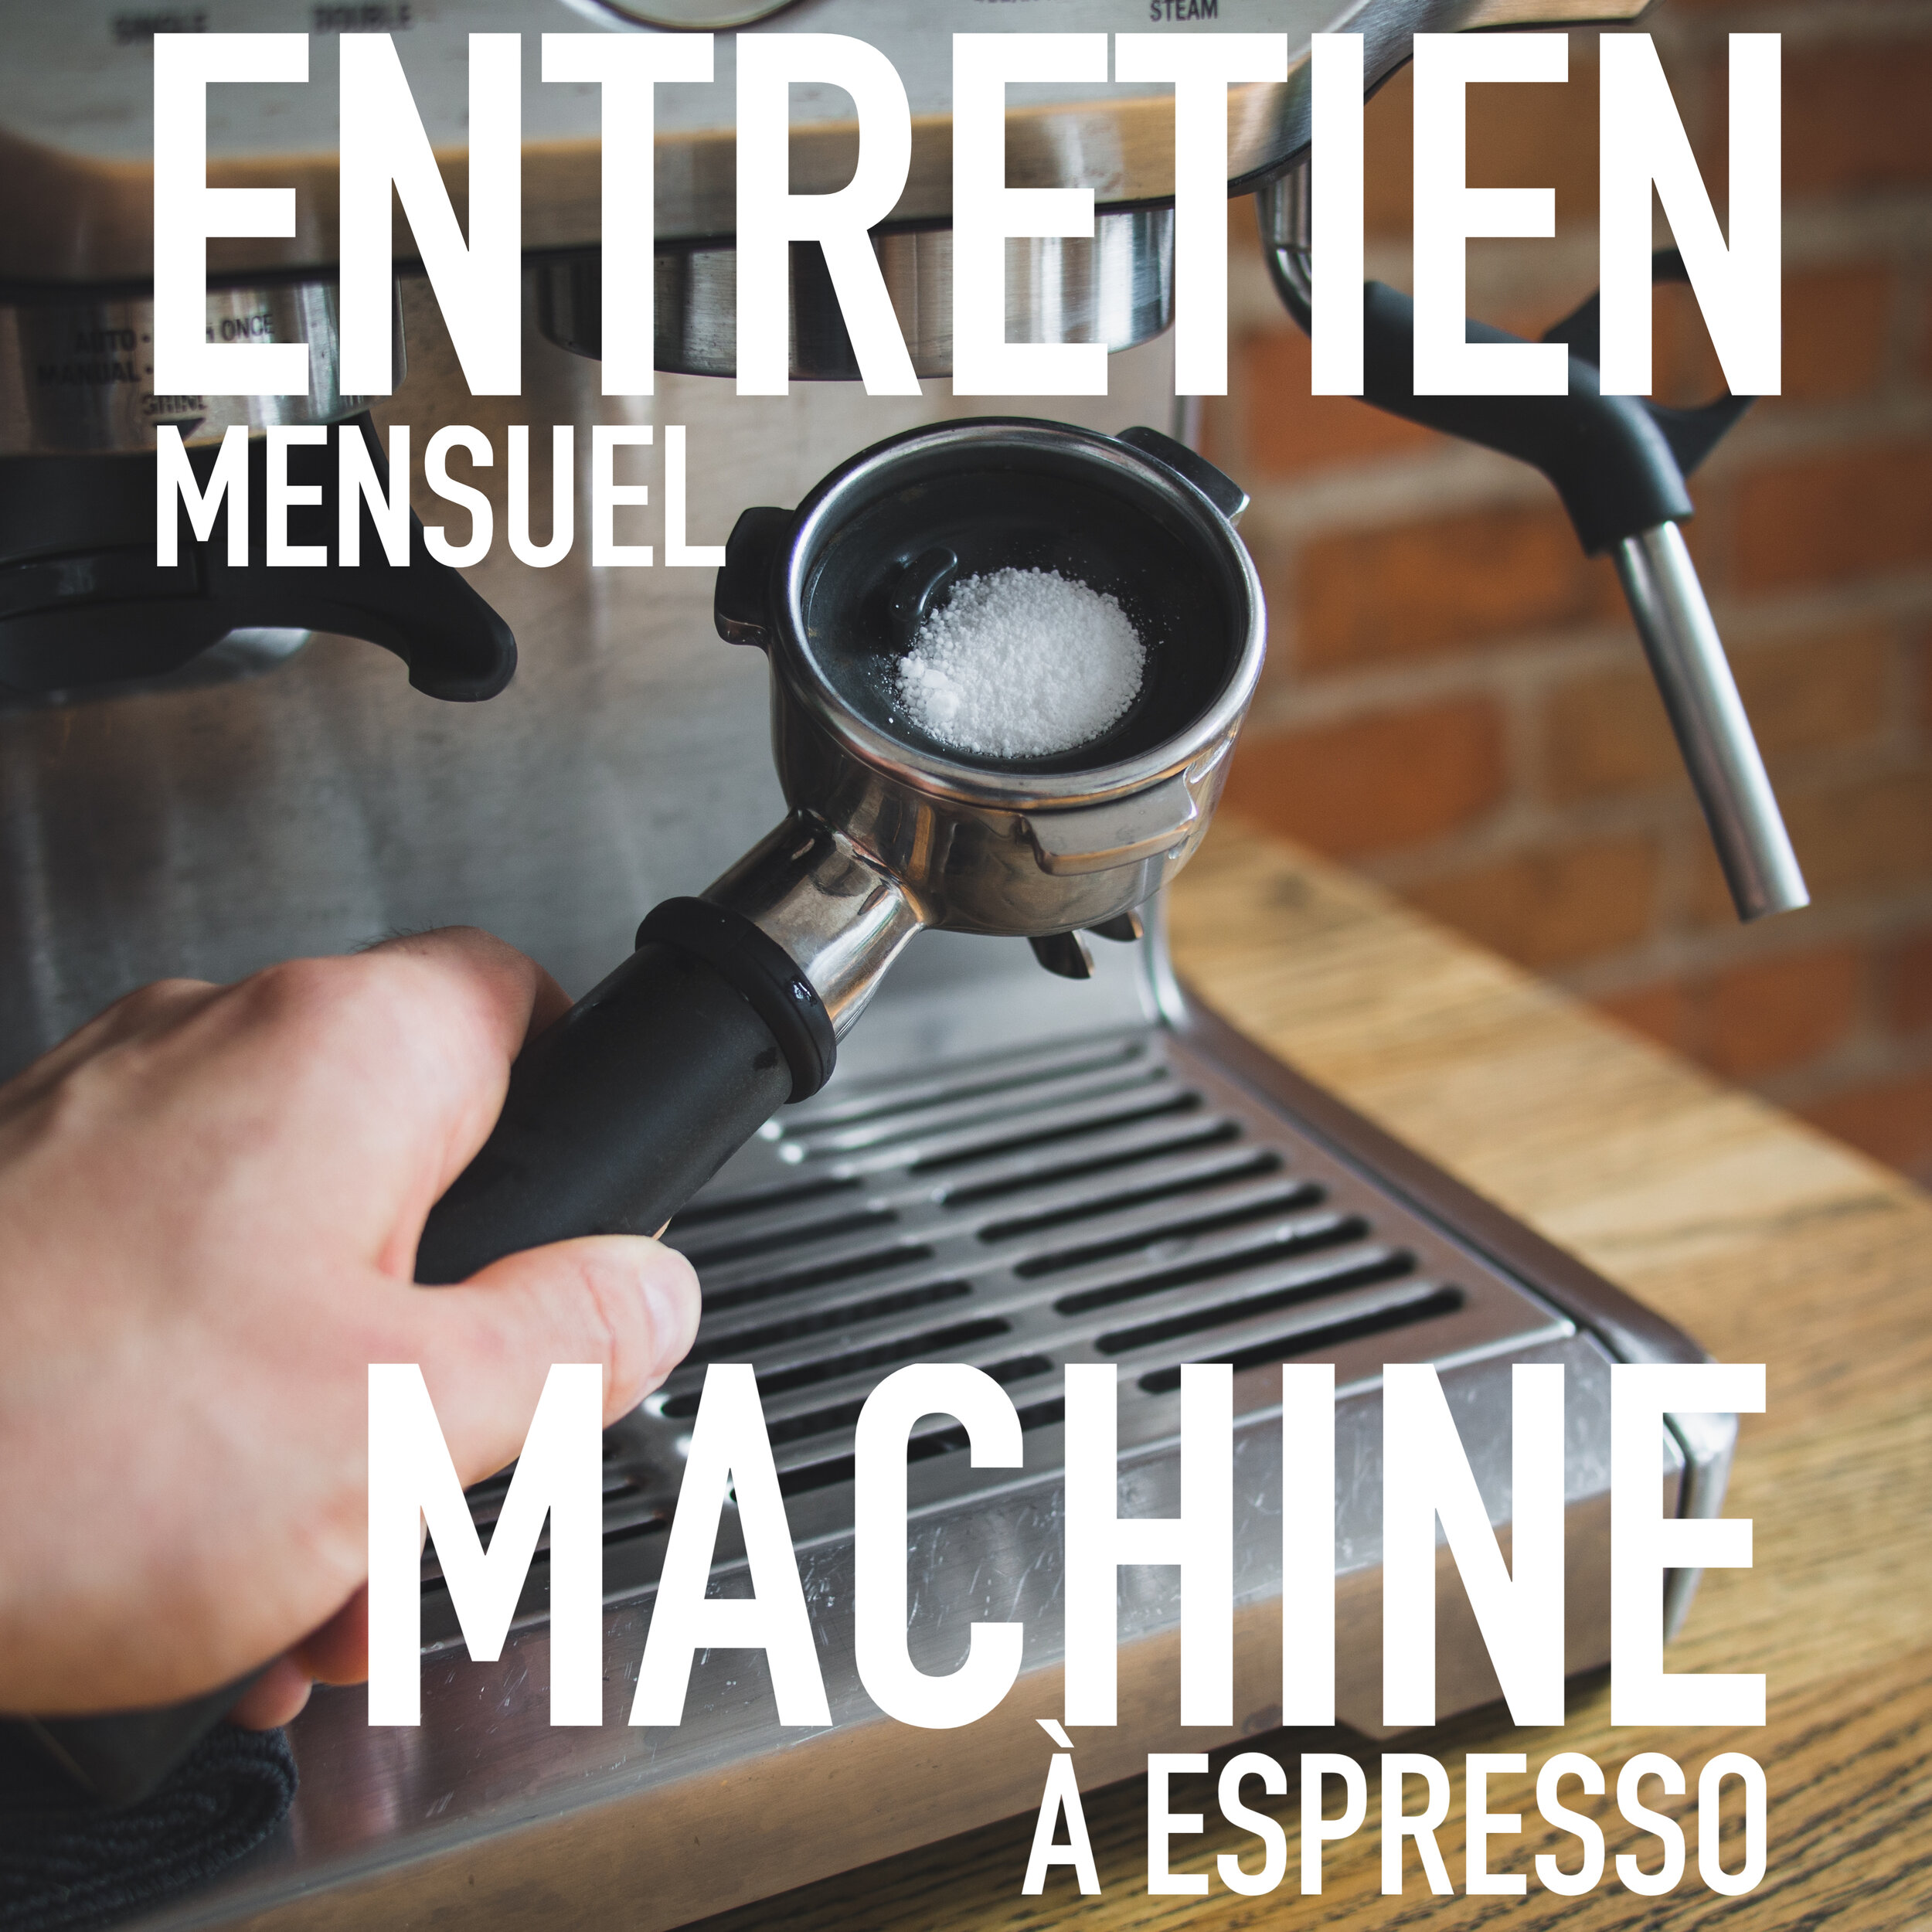 Comment nettoyer votre machine espresso?